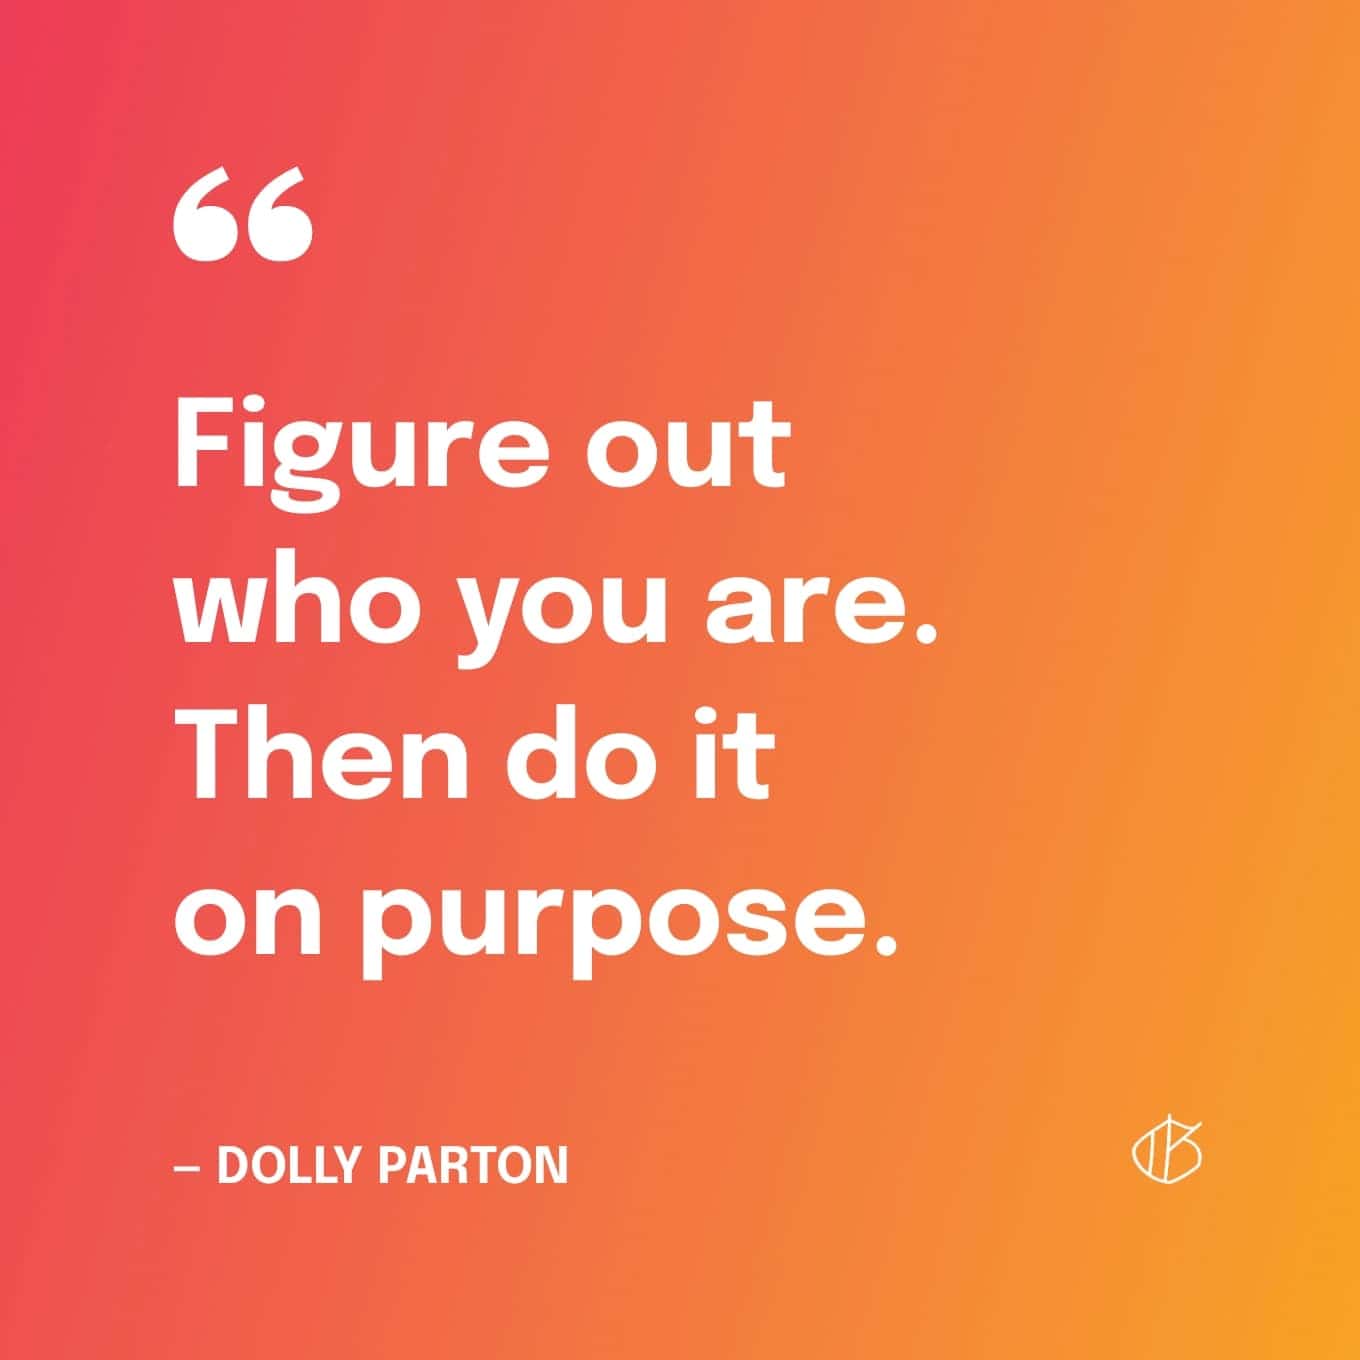 Dolly Parton Quote Wallpaper: Zoek uit wie je bent. Doe het dan expres.